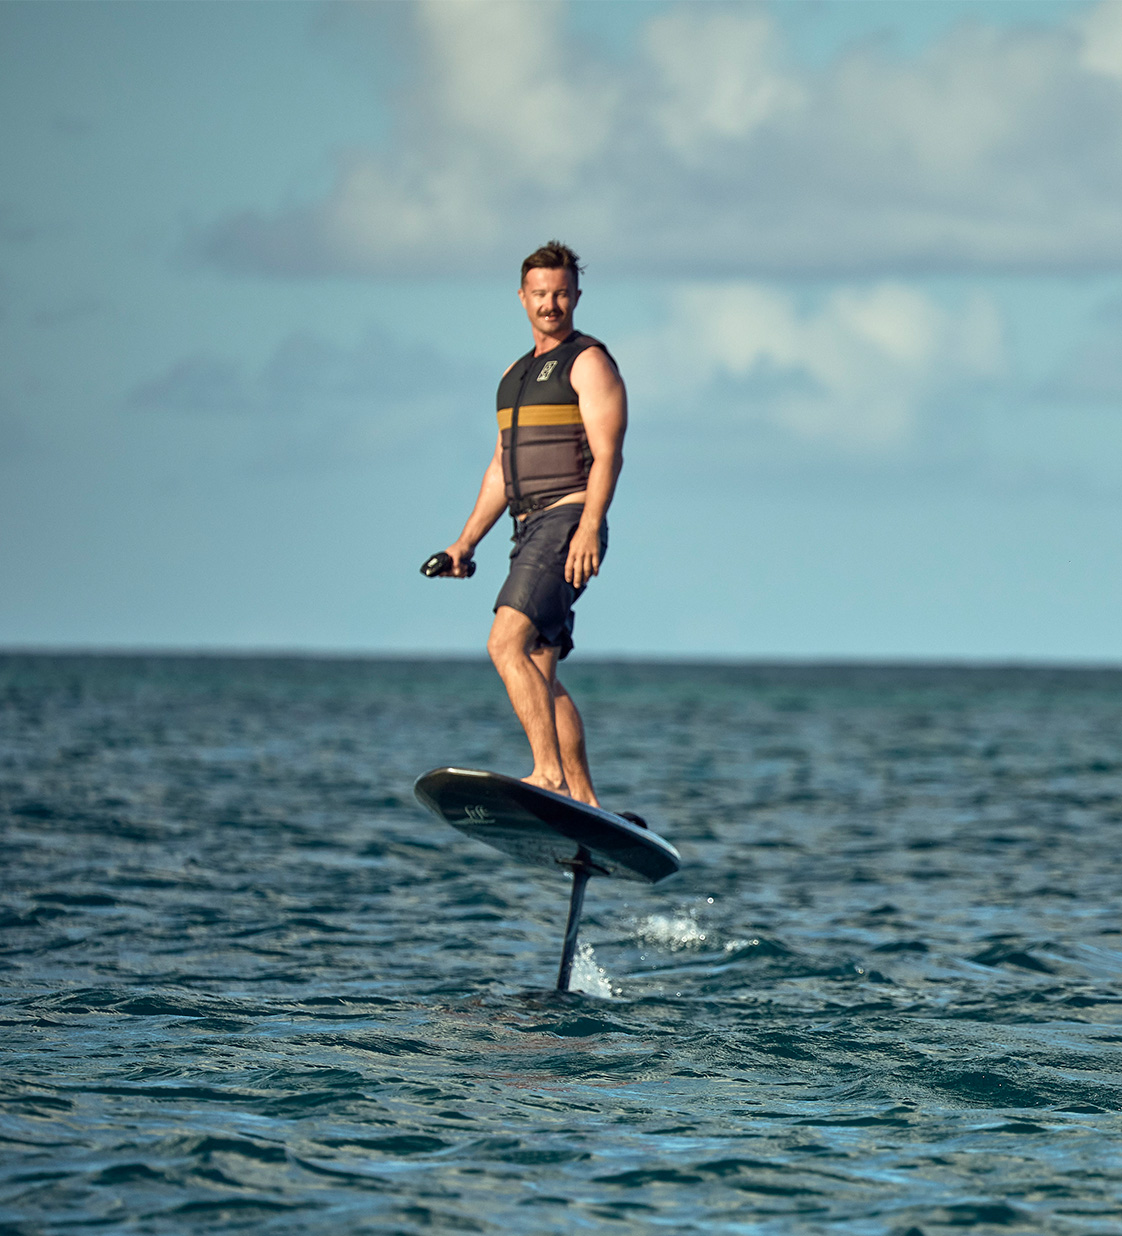 La-Gatta-Experiences-Electric-Hydrofoil-Surfboard